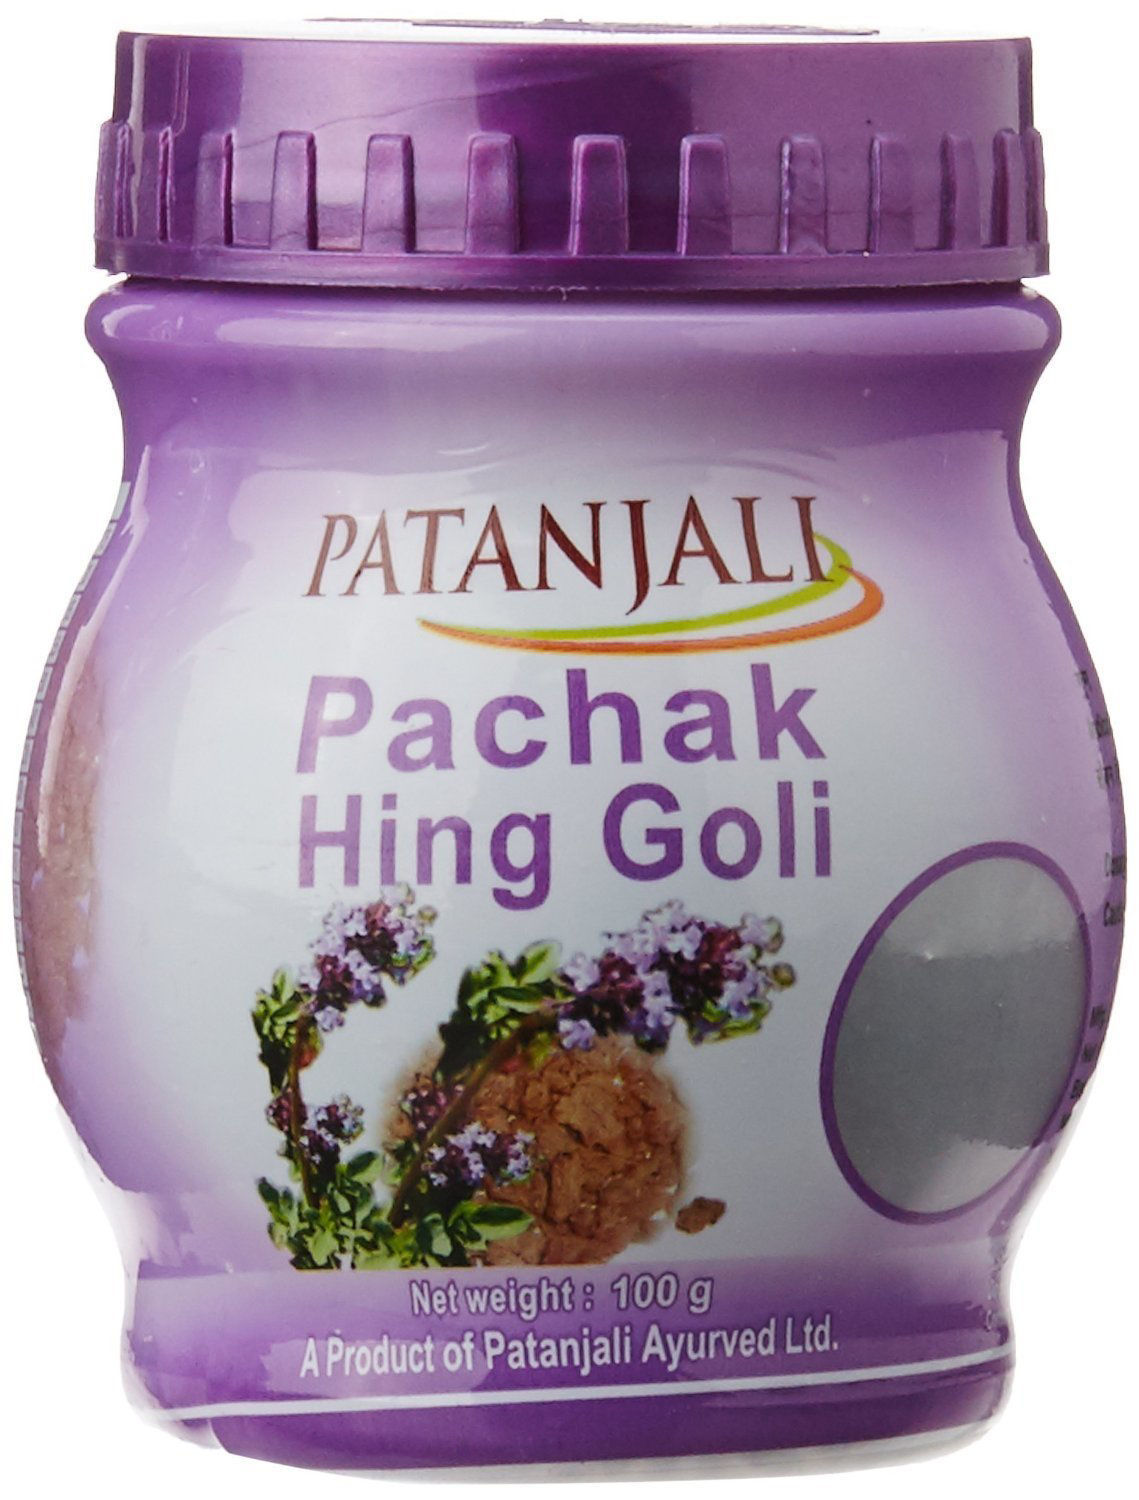 Picture of Patanjali pachak hing goli